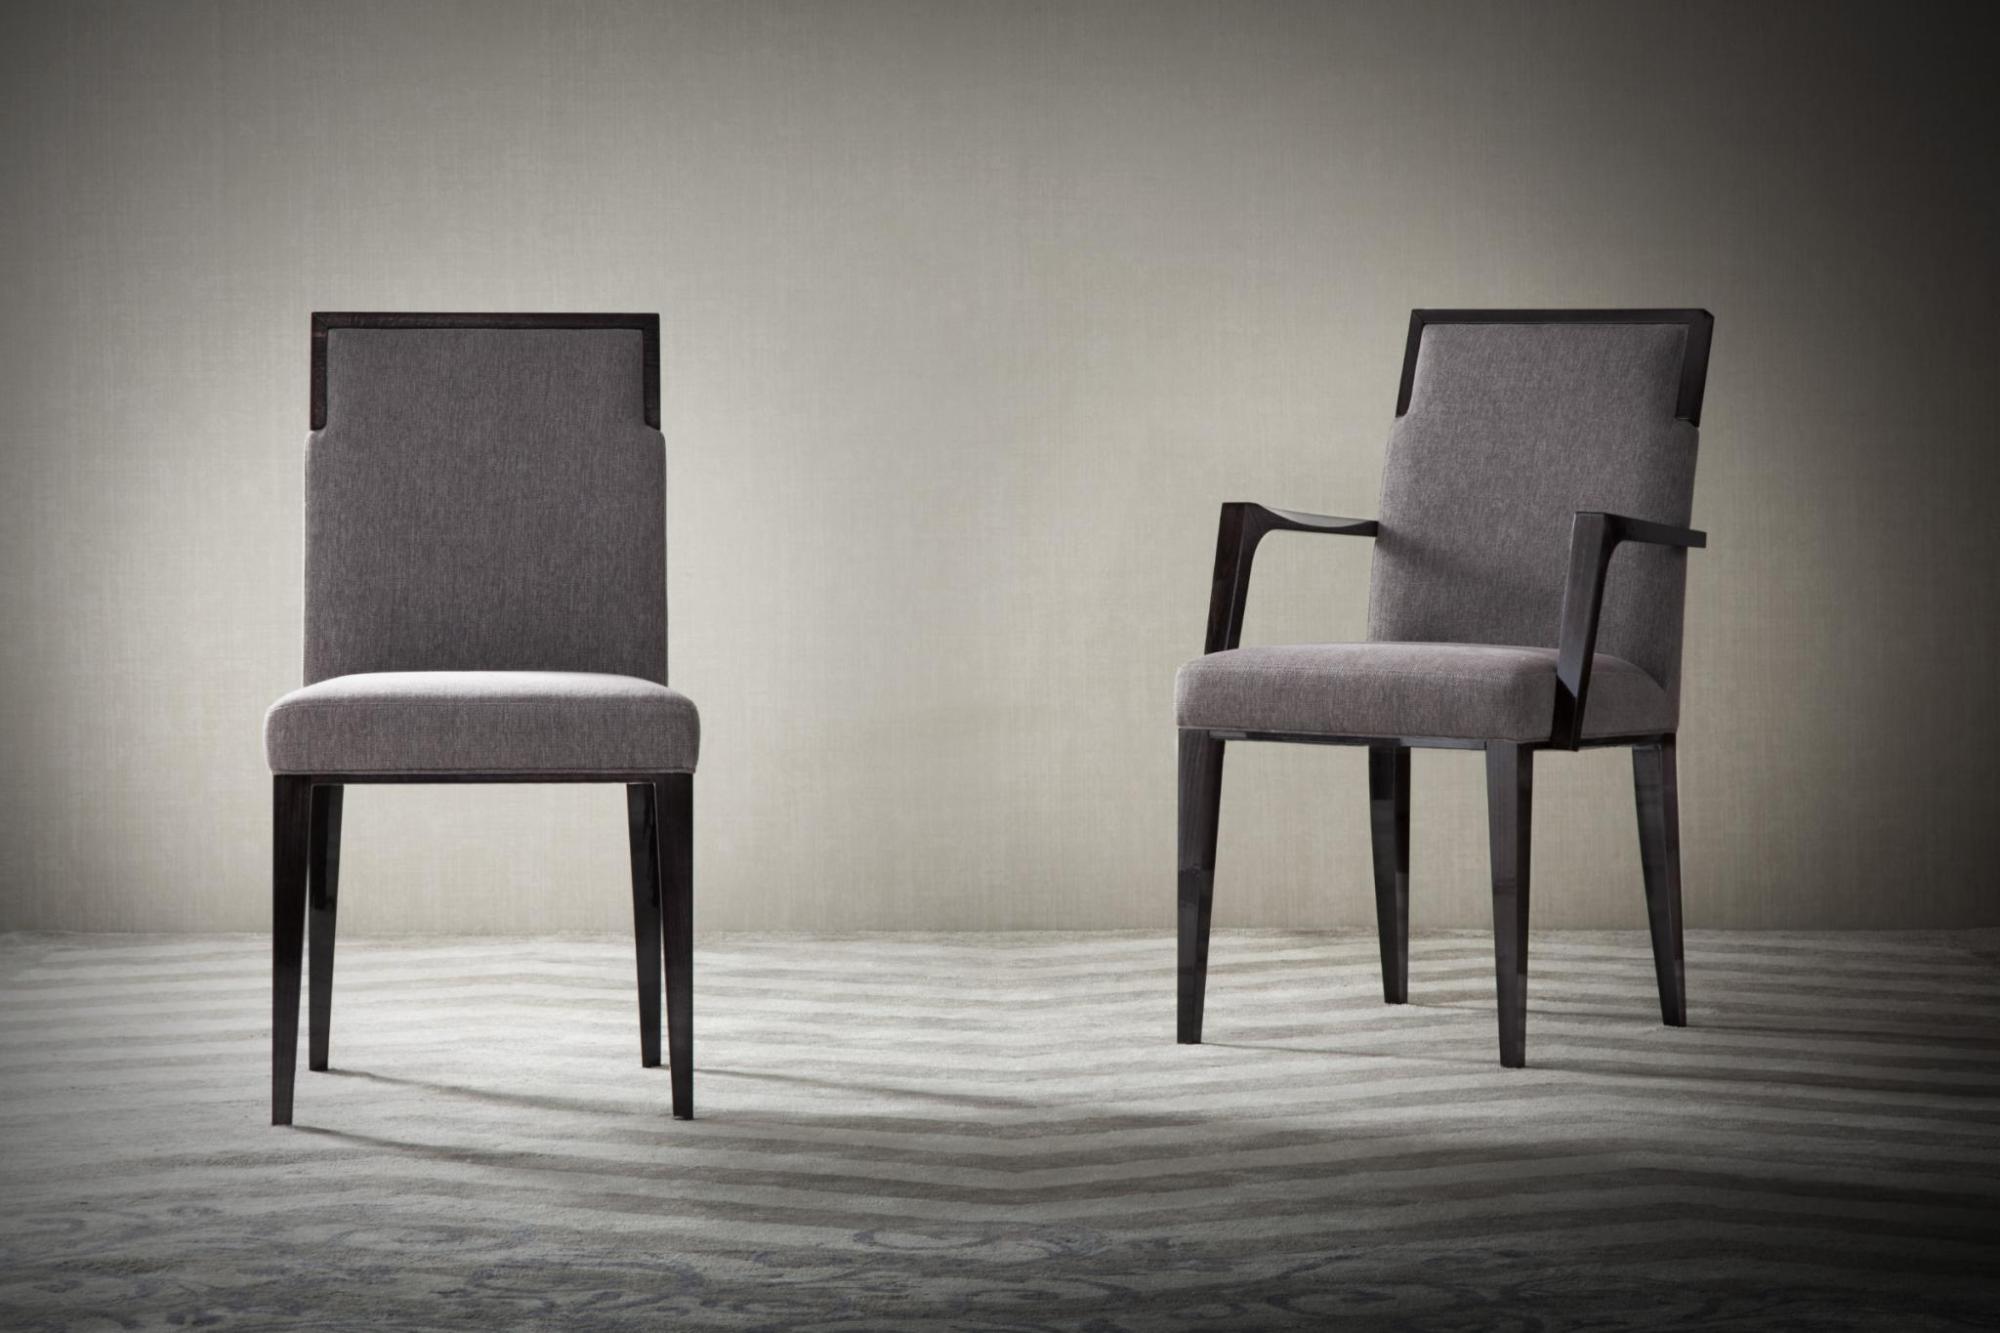 意大利家具costantinipietro的chairs-CONCEPT1 餐椅 细节图